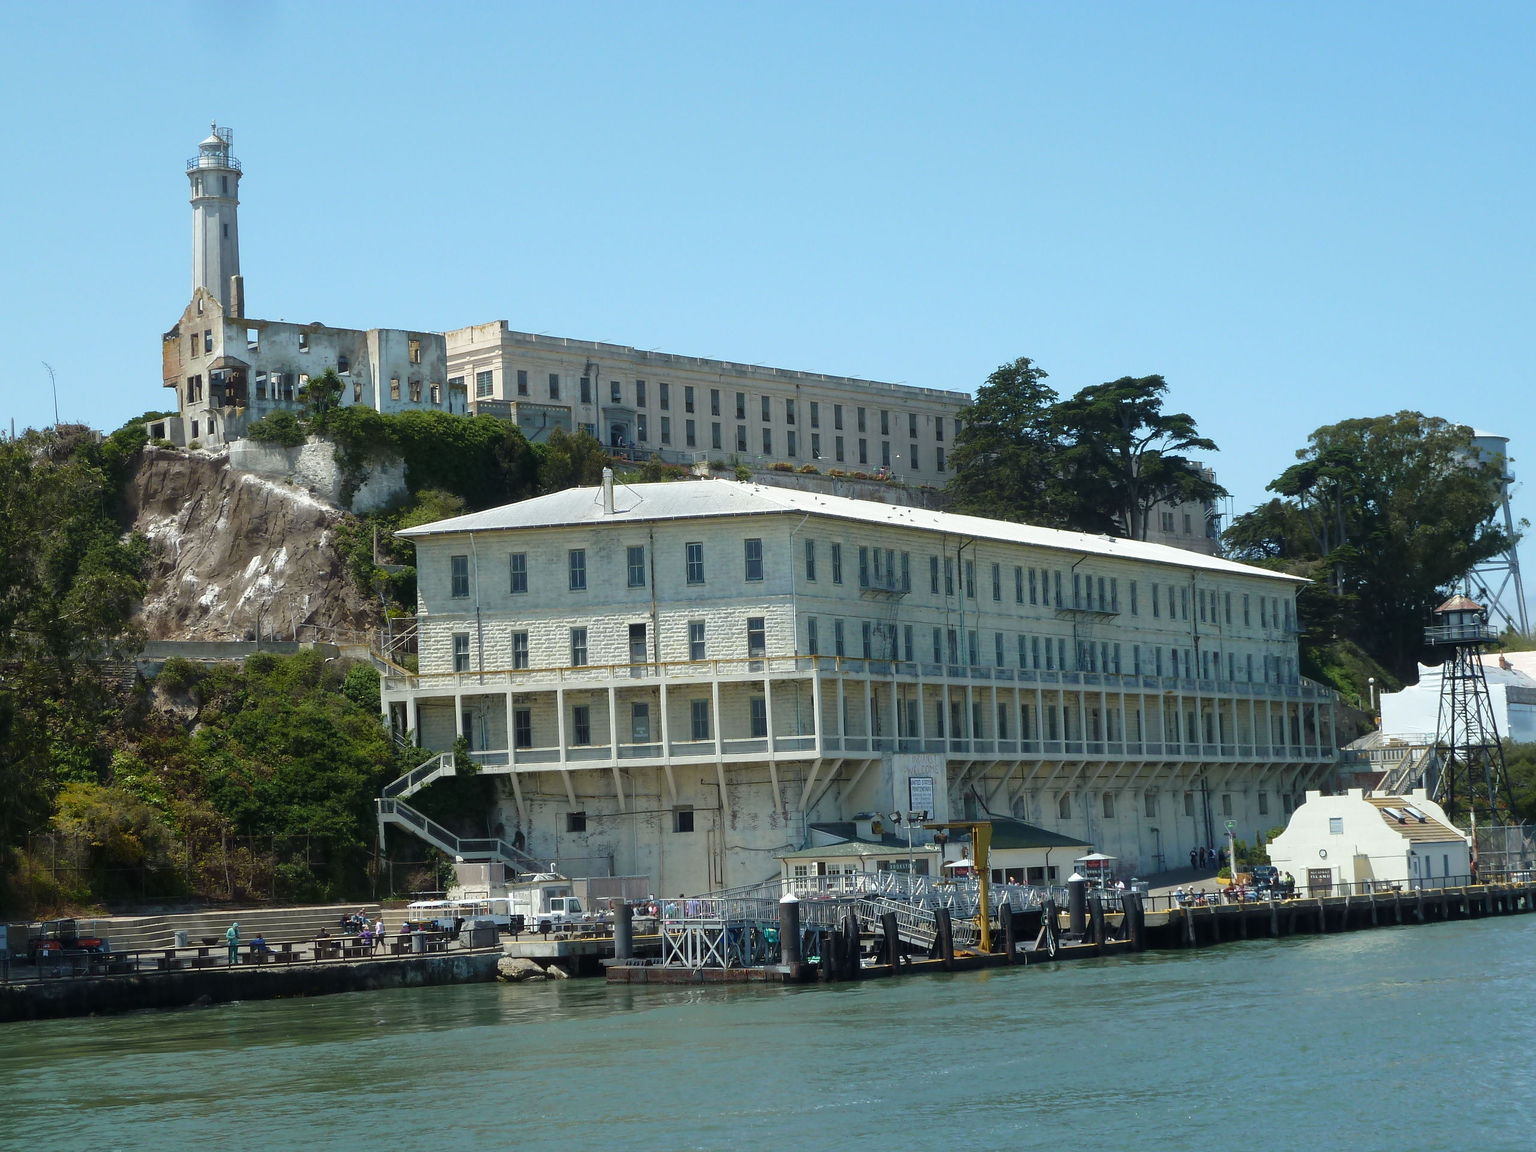 Alcatraz landing